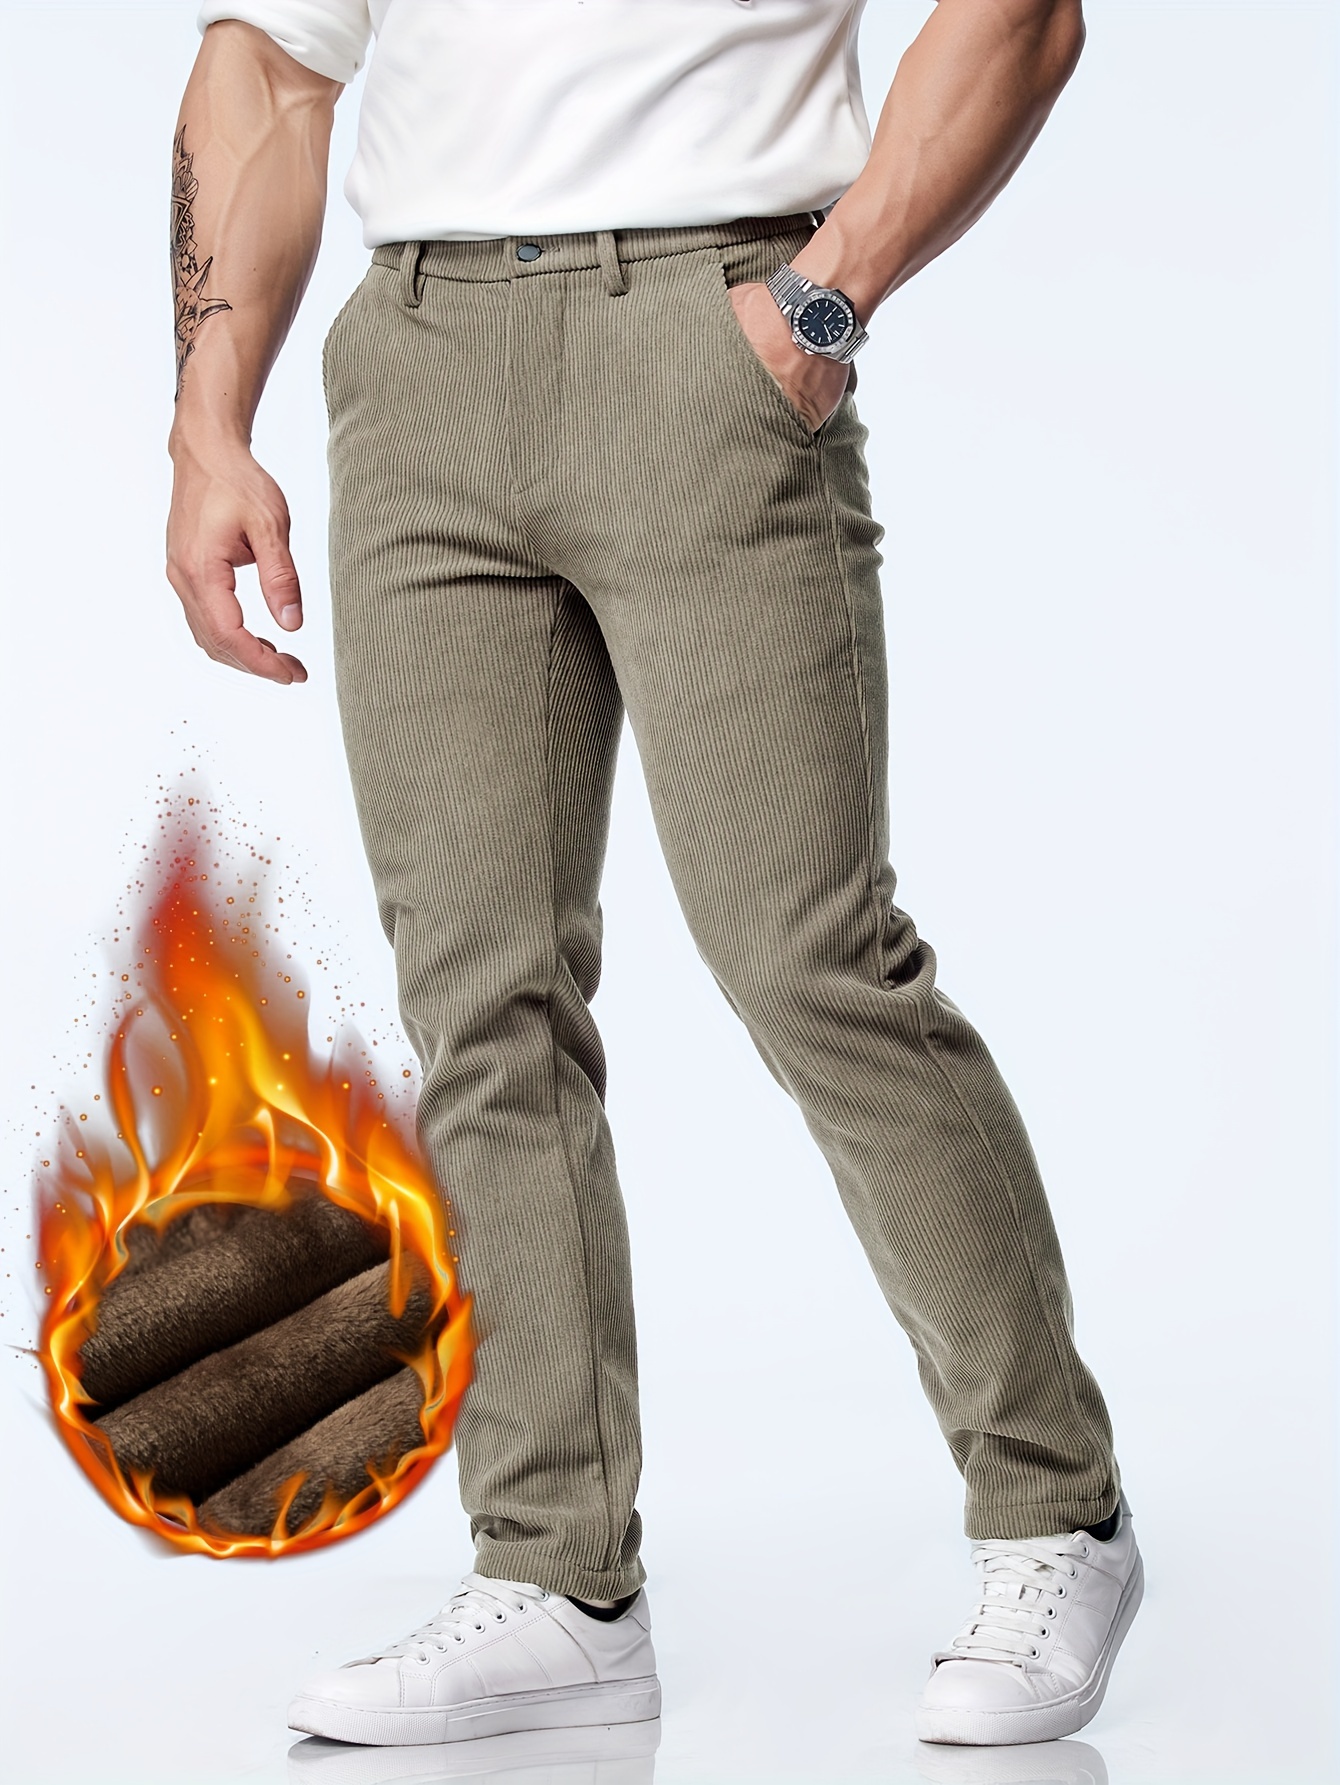 Pantalones Térmicos Gruesos Y Cálidos Para Hombre, Rectos Y A Prueba De  Viento, Ideales Para Correr En Invierno